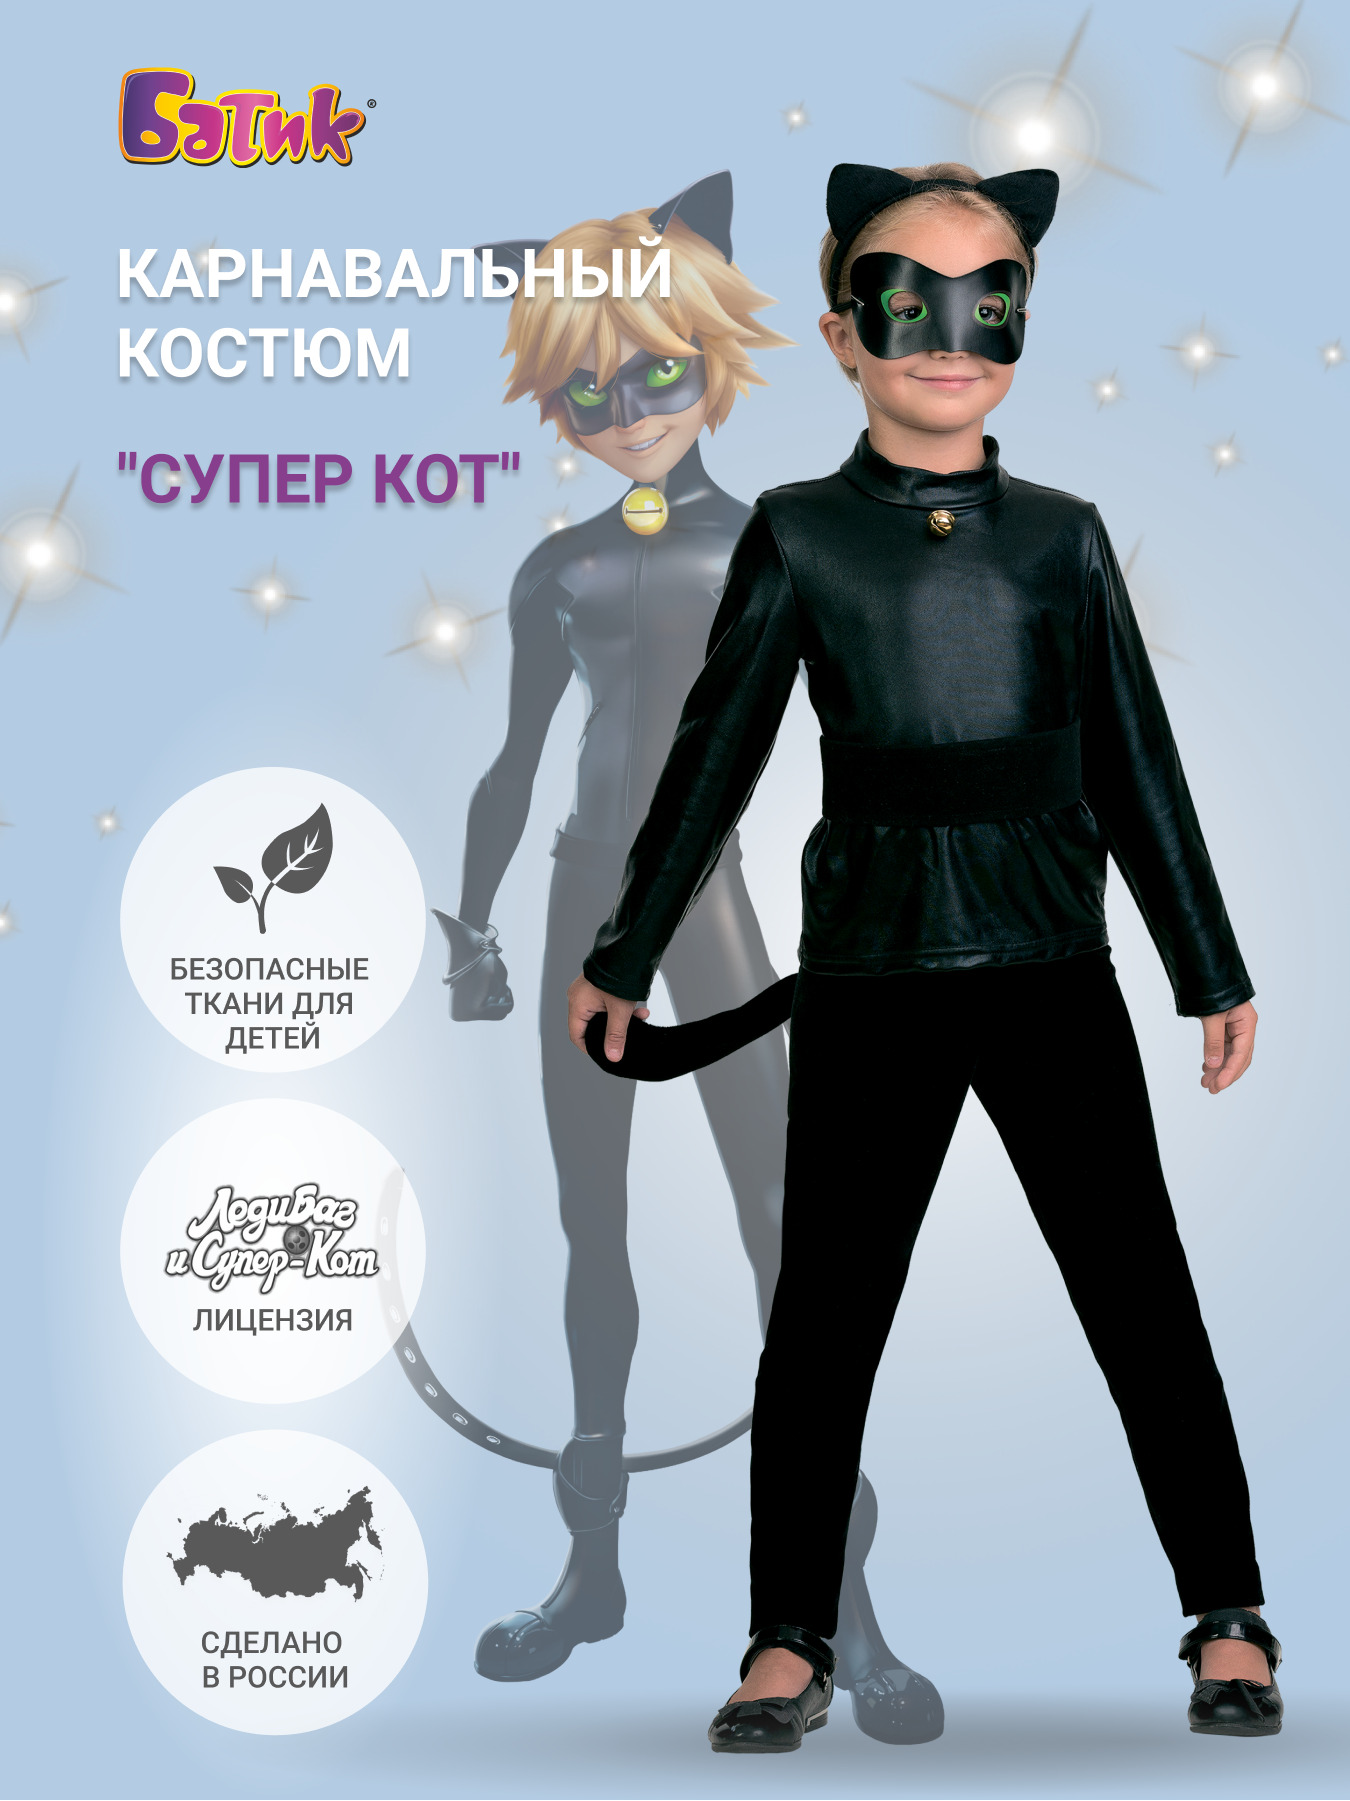 Карнавальный костюм супер кот